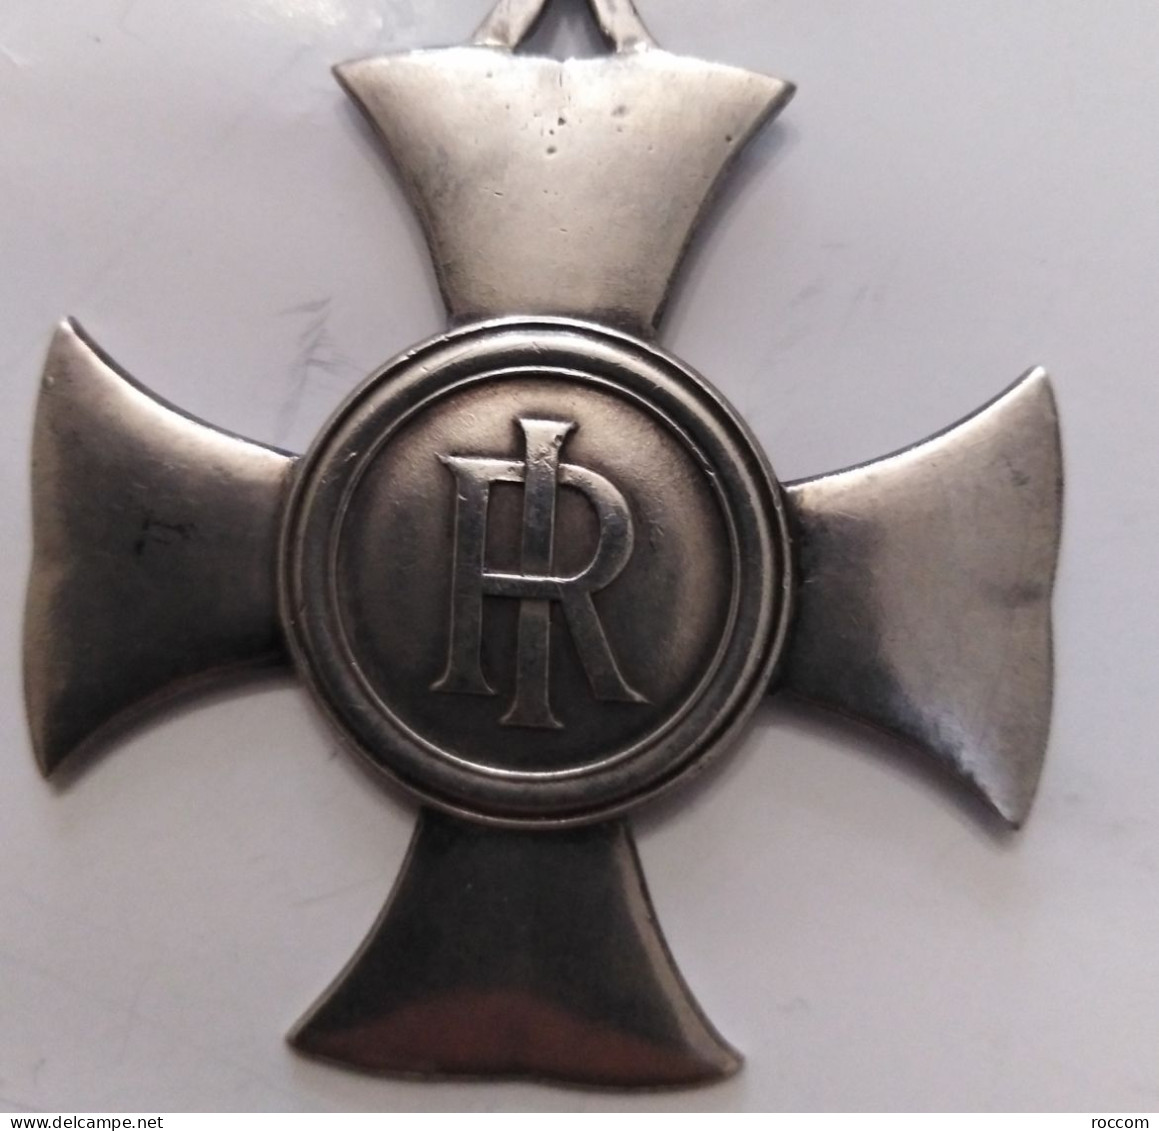 Medaglia Al Merito Di Servizio Condizioni Da Foto Spedizione Solo In Italia - Armee